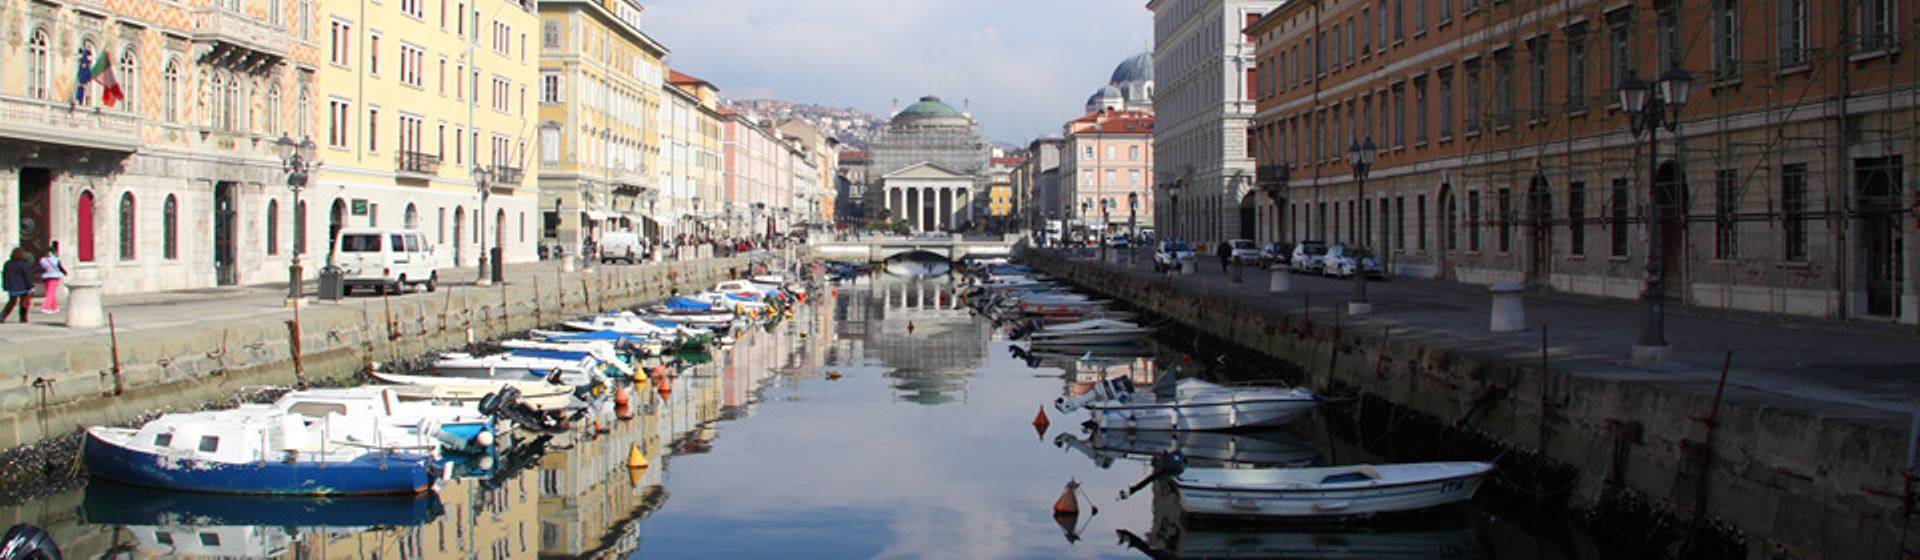 Holidays to Trieste Image